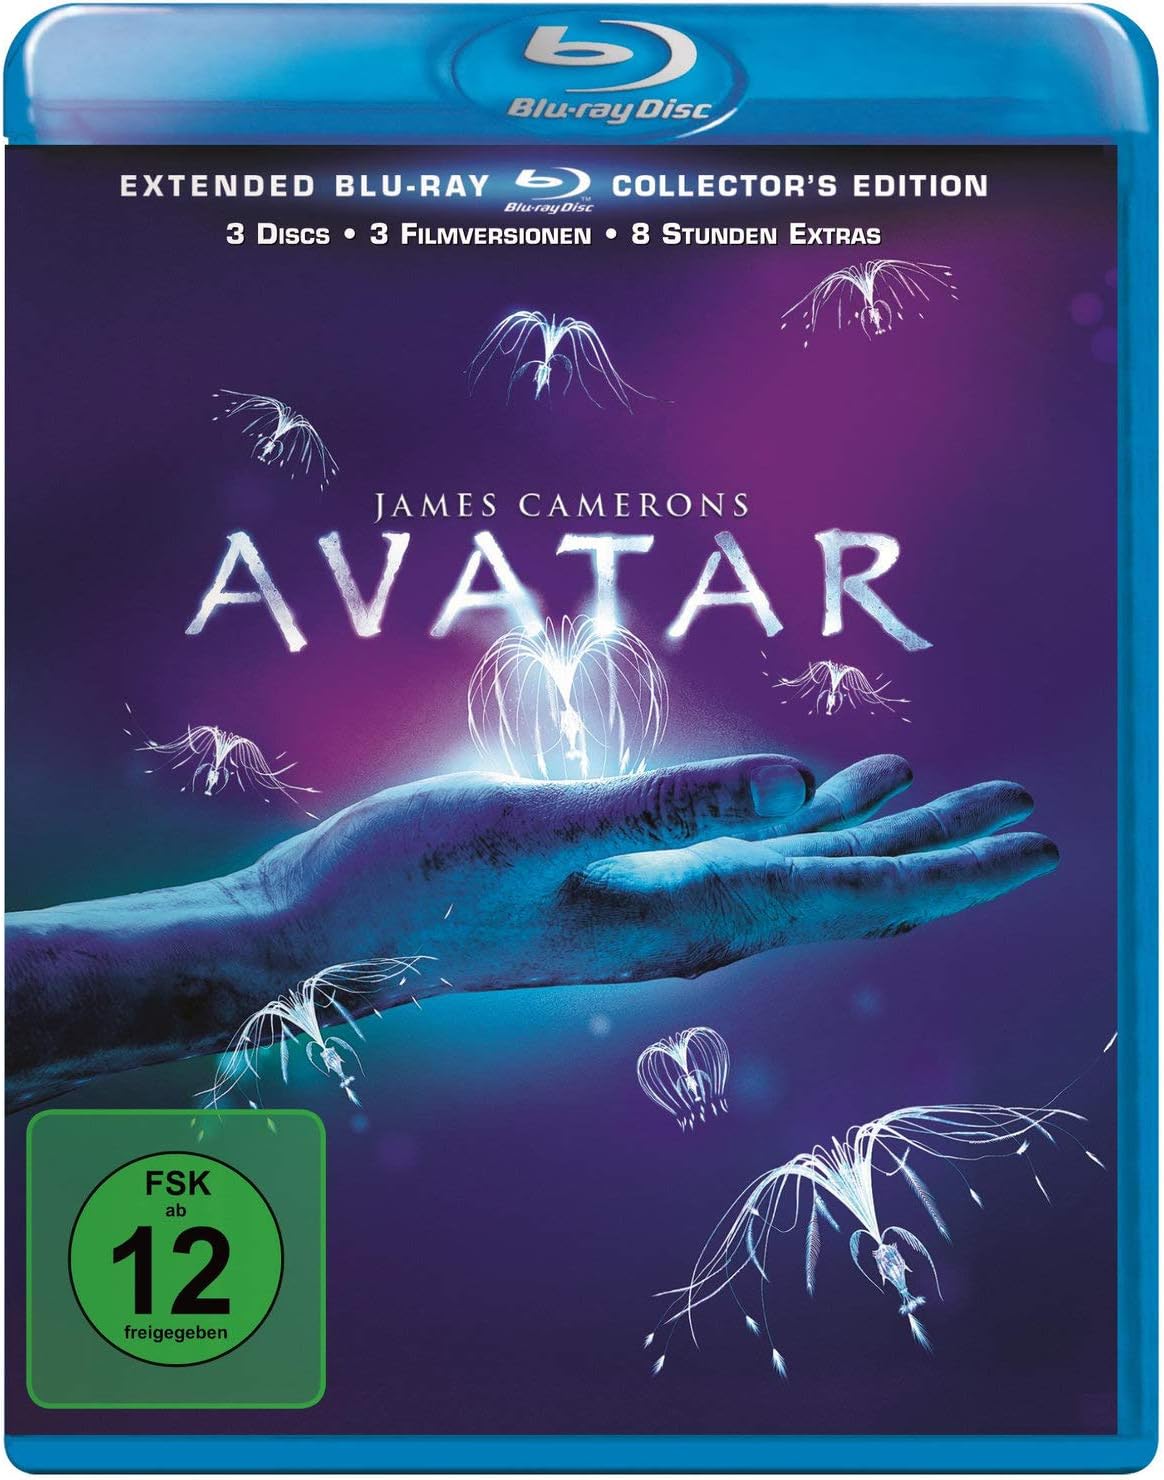 ΑΒΑΤΑΡ AVATAR 3 DISCS EXTENDED COLLECTOR'S EDITION- Blu-ray